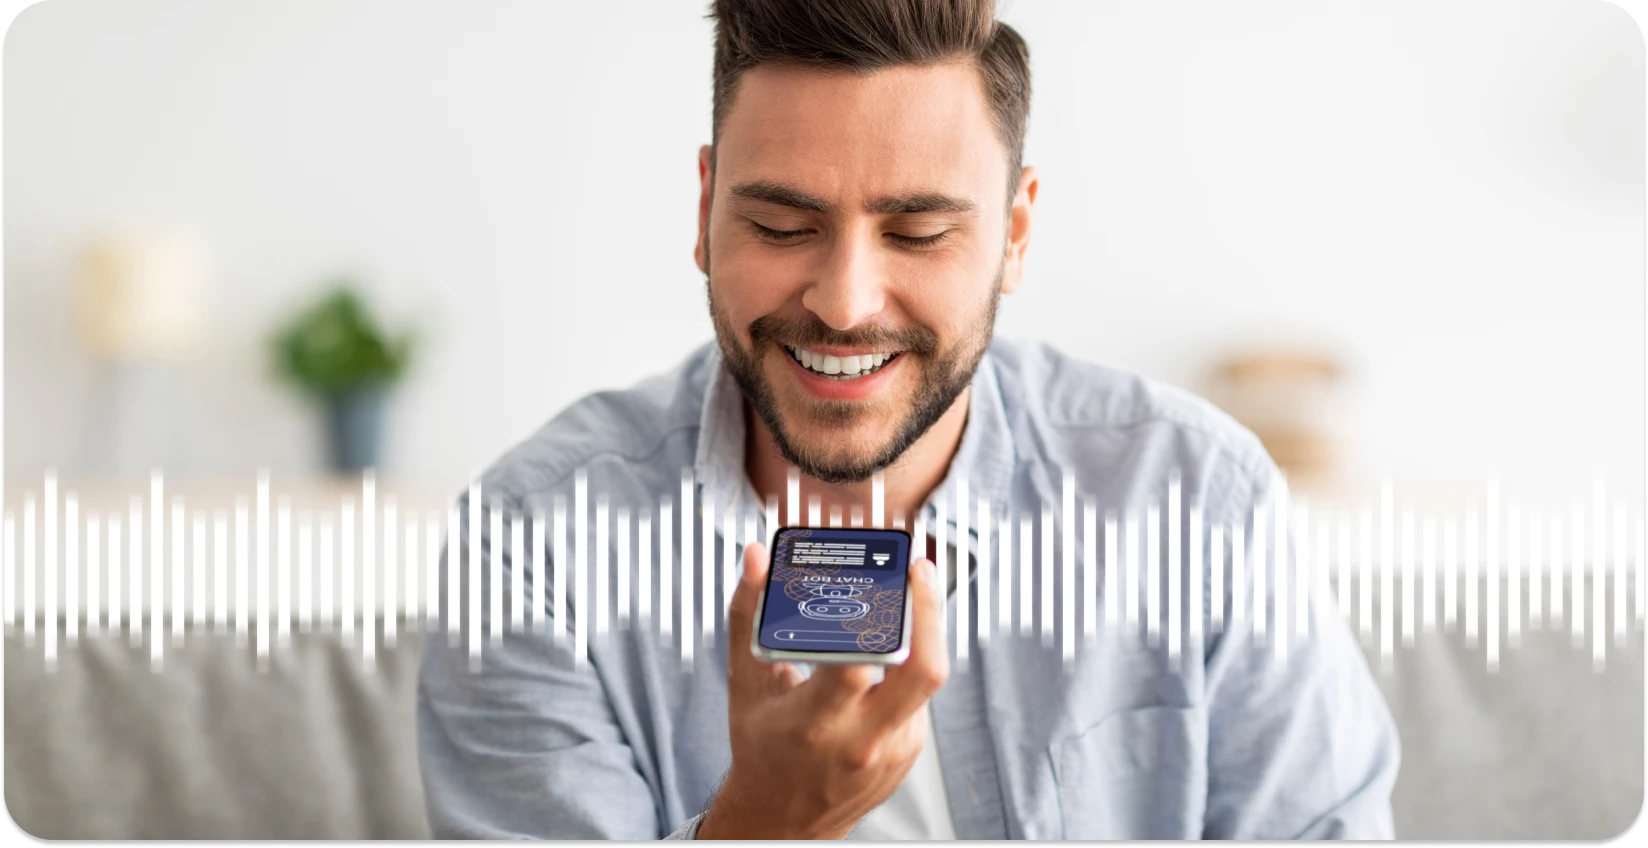 Mann lächelt, während er eine Smartphone-App verwendet, um Audiowellen zu trimmen und so das Online-Bearbeitungserlebnis zu verbessern.